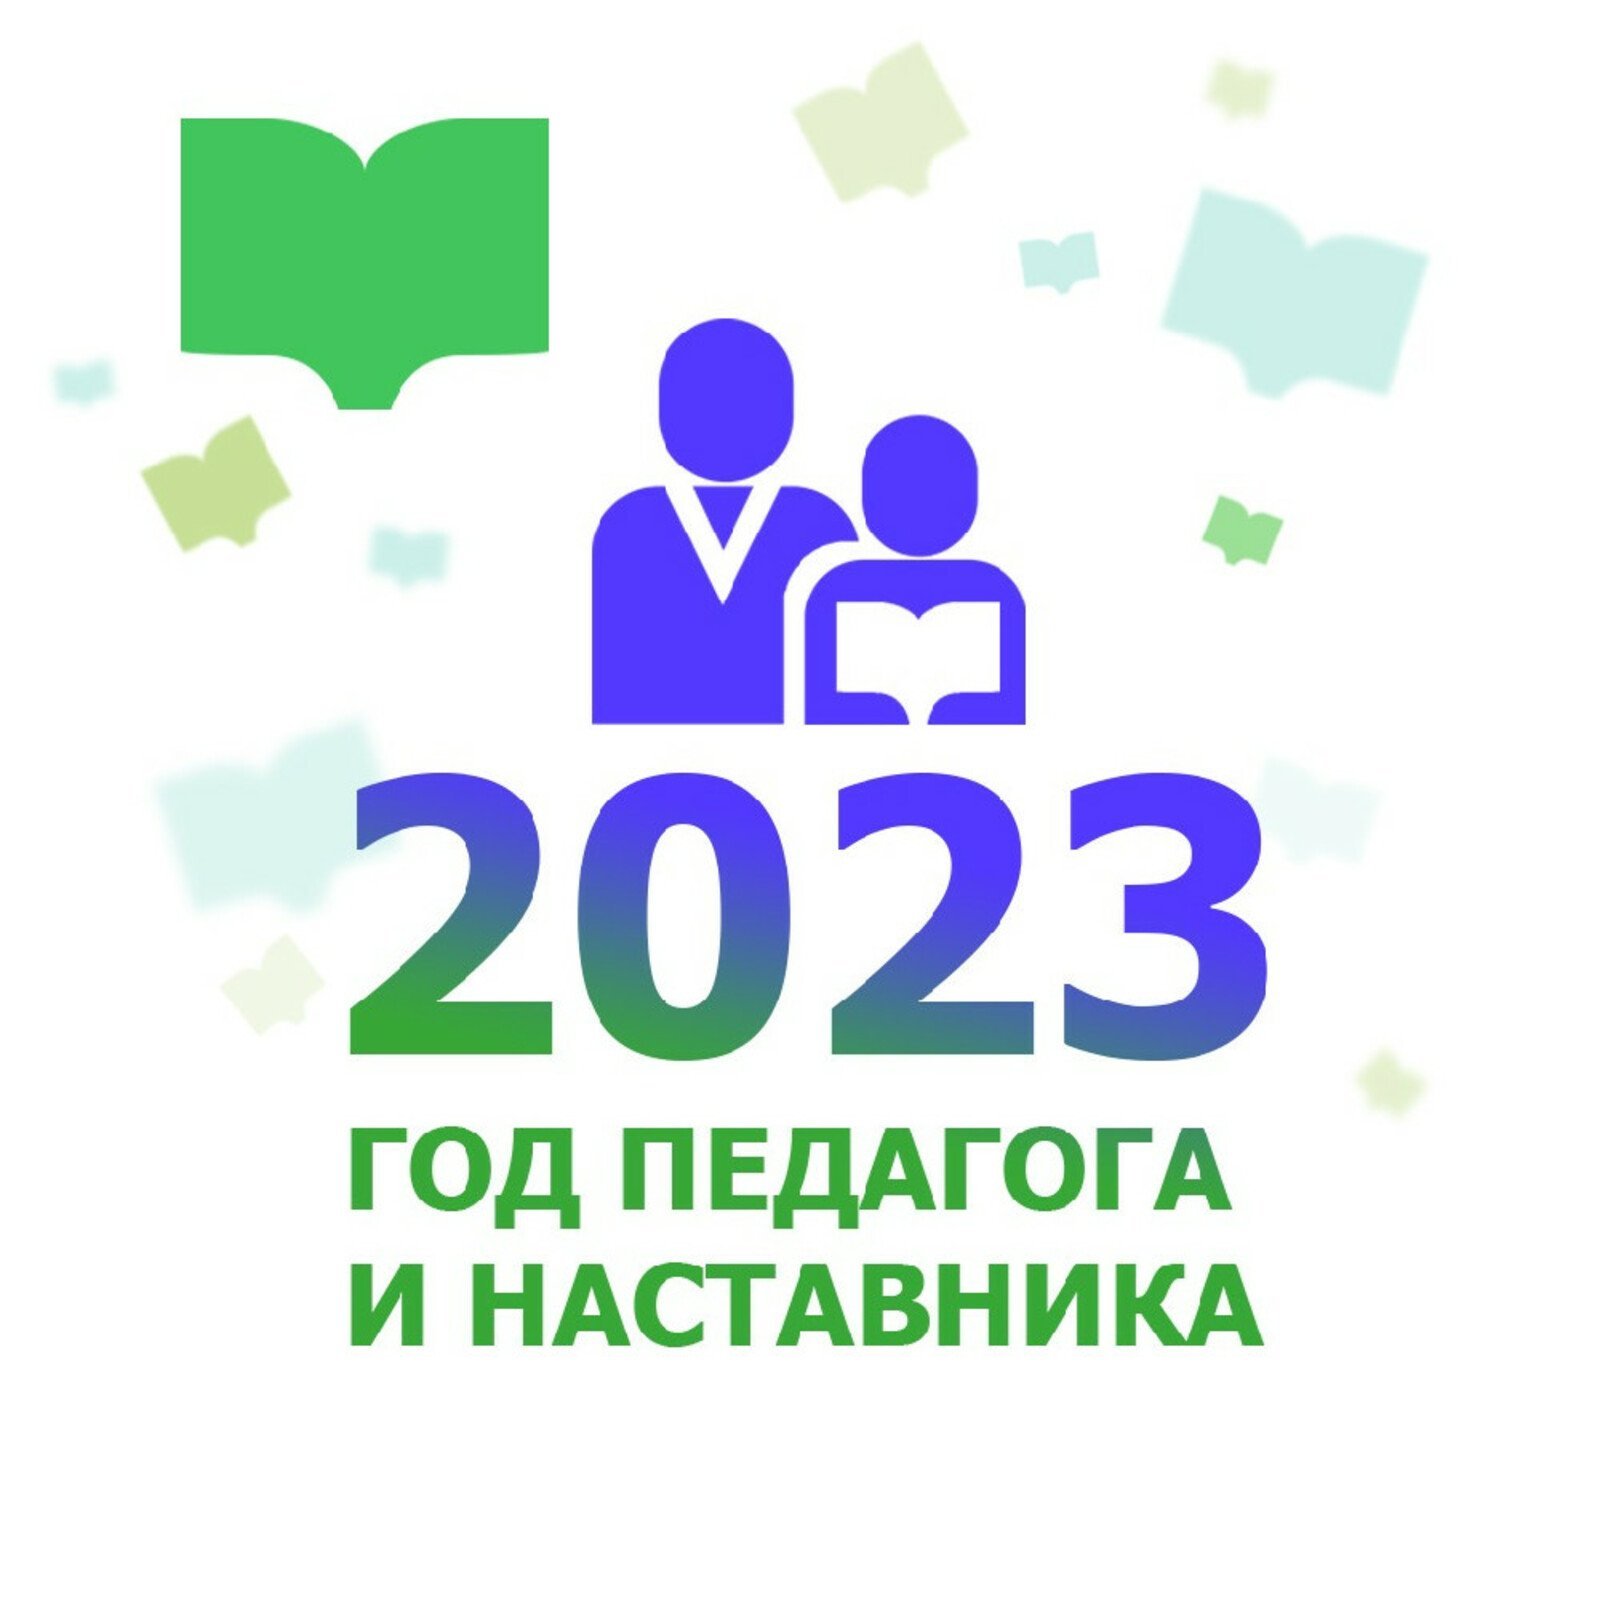 Логотип год педагога и наставника на прозрачном фоне фото